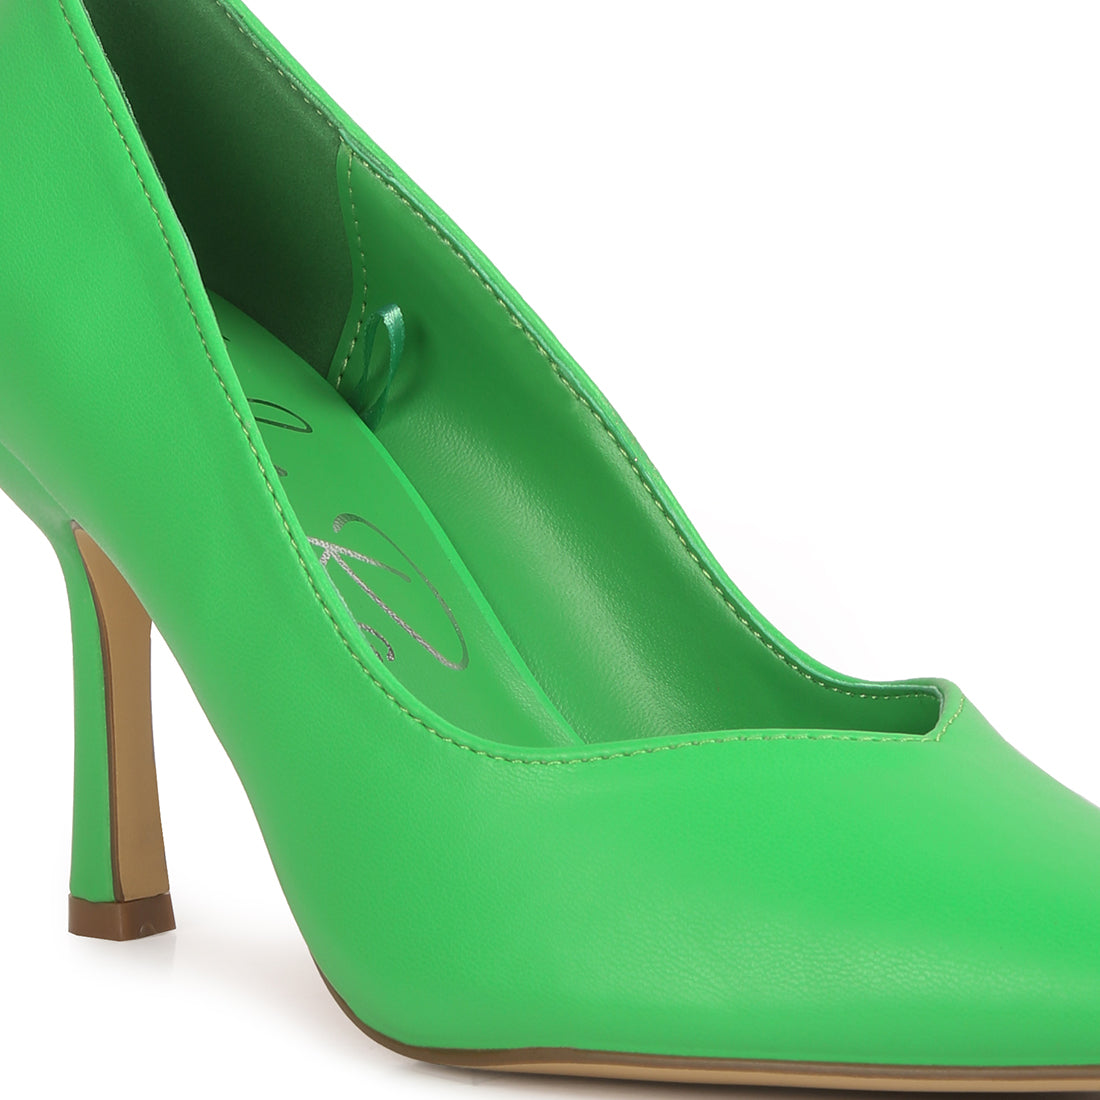 stiletto heel pumps#color_green